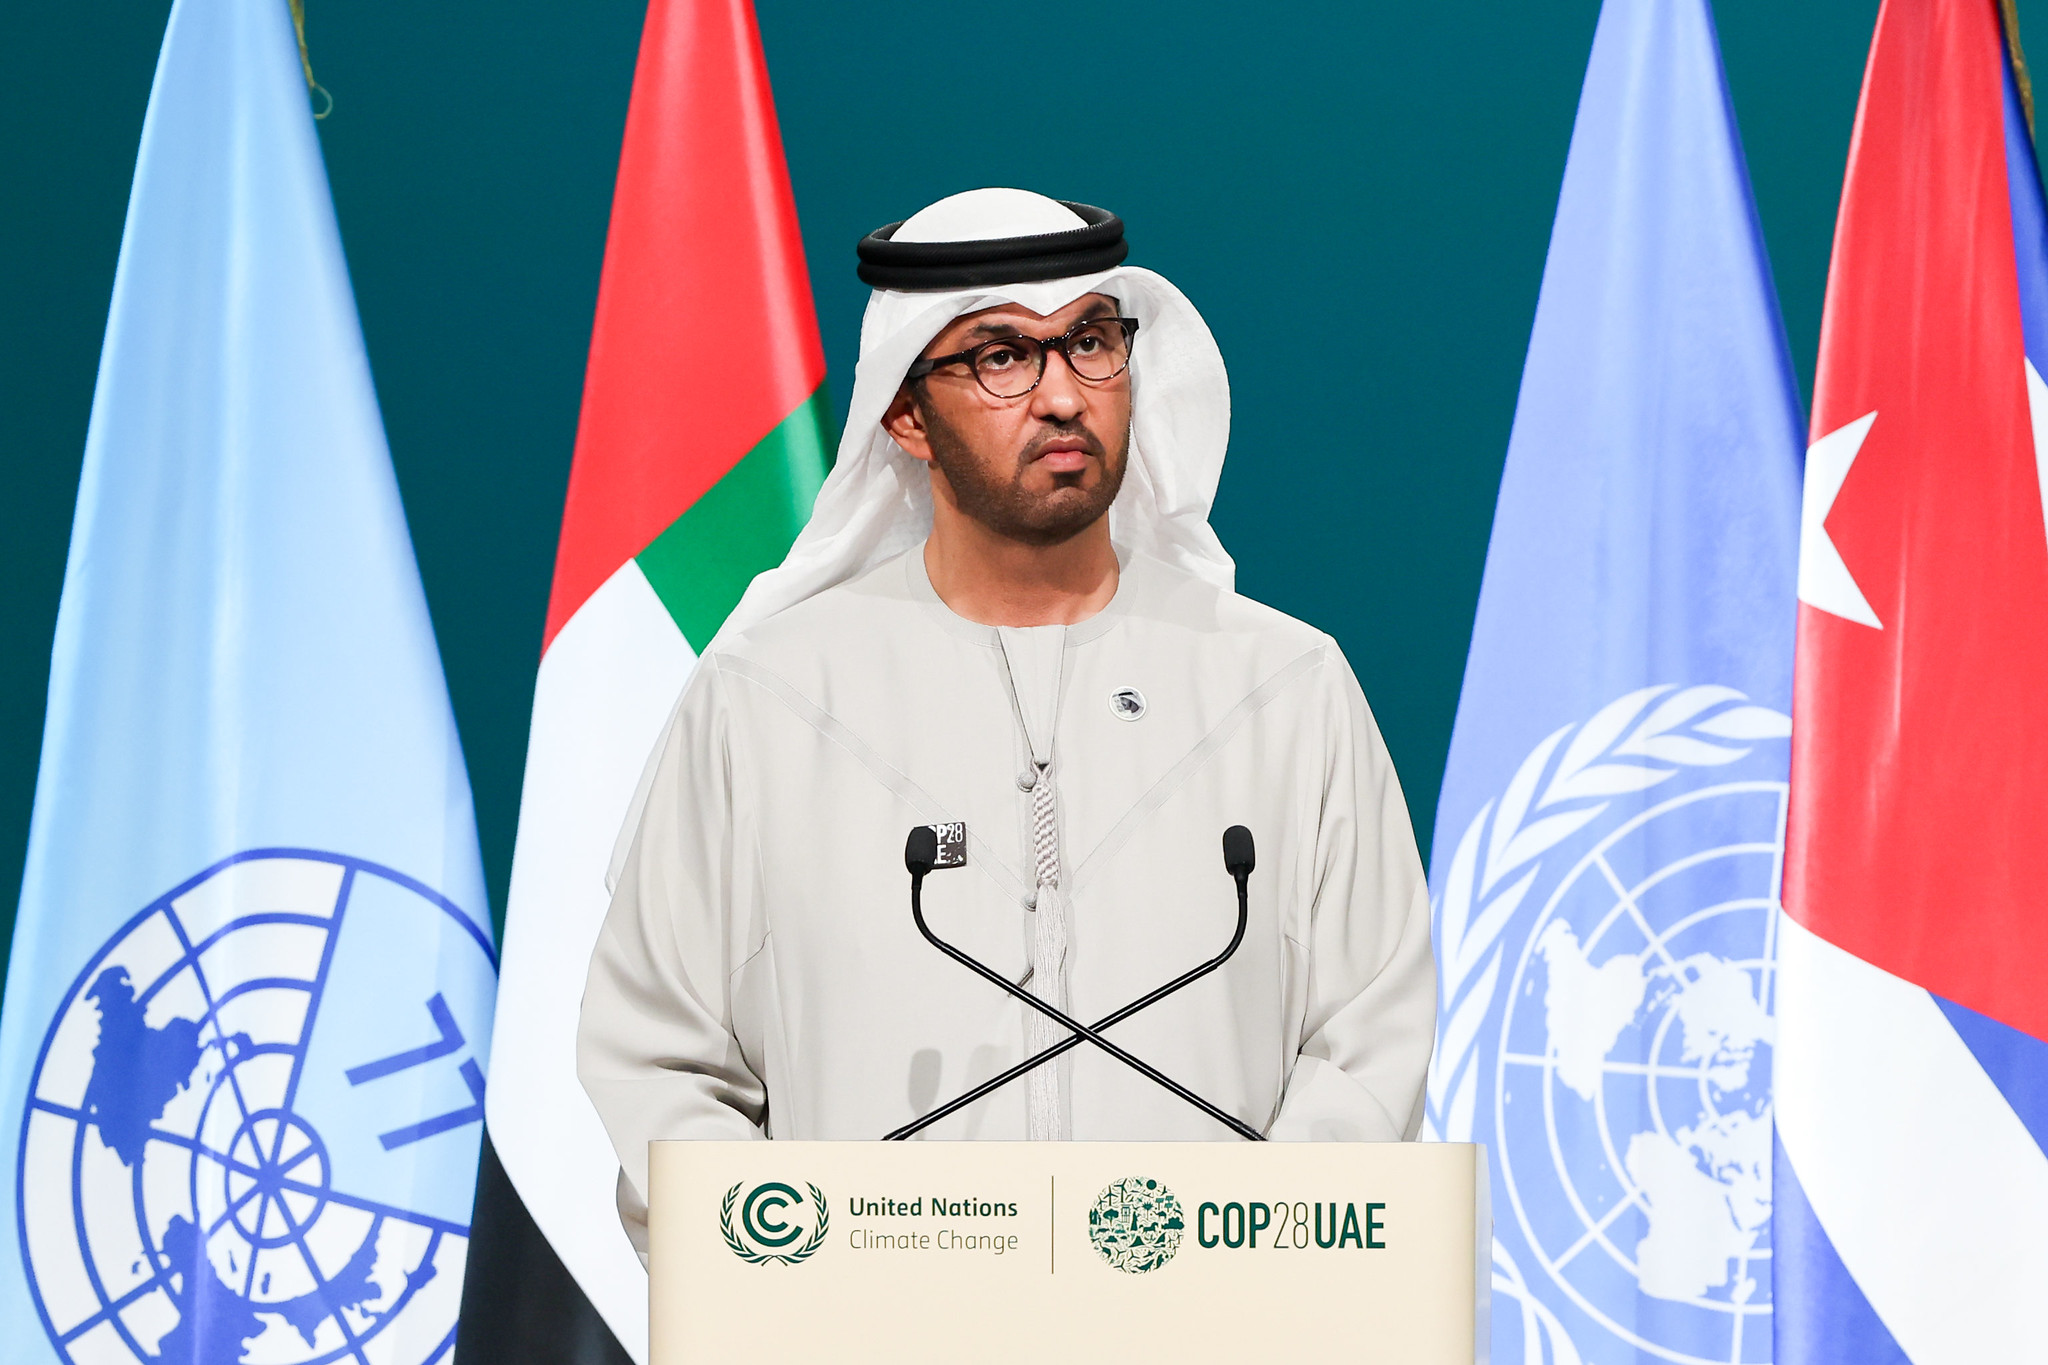 Il presidente della COP28, Sultan Al Jaber. Hanno suscitato la riprovazione globale le sue affermazioni sulla non scientificità dell'eliminazione dei combustibili fossili entro il 2050.